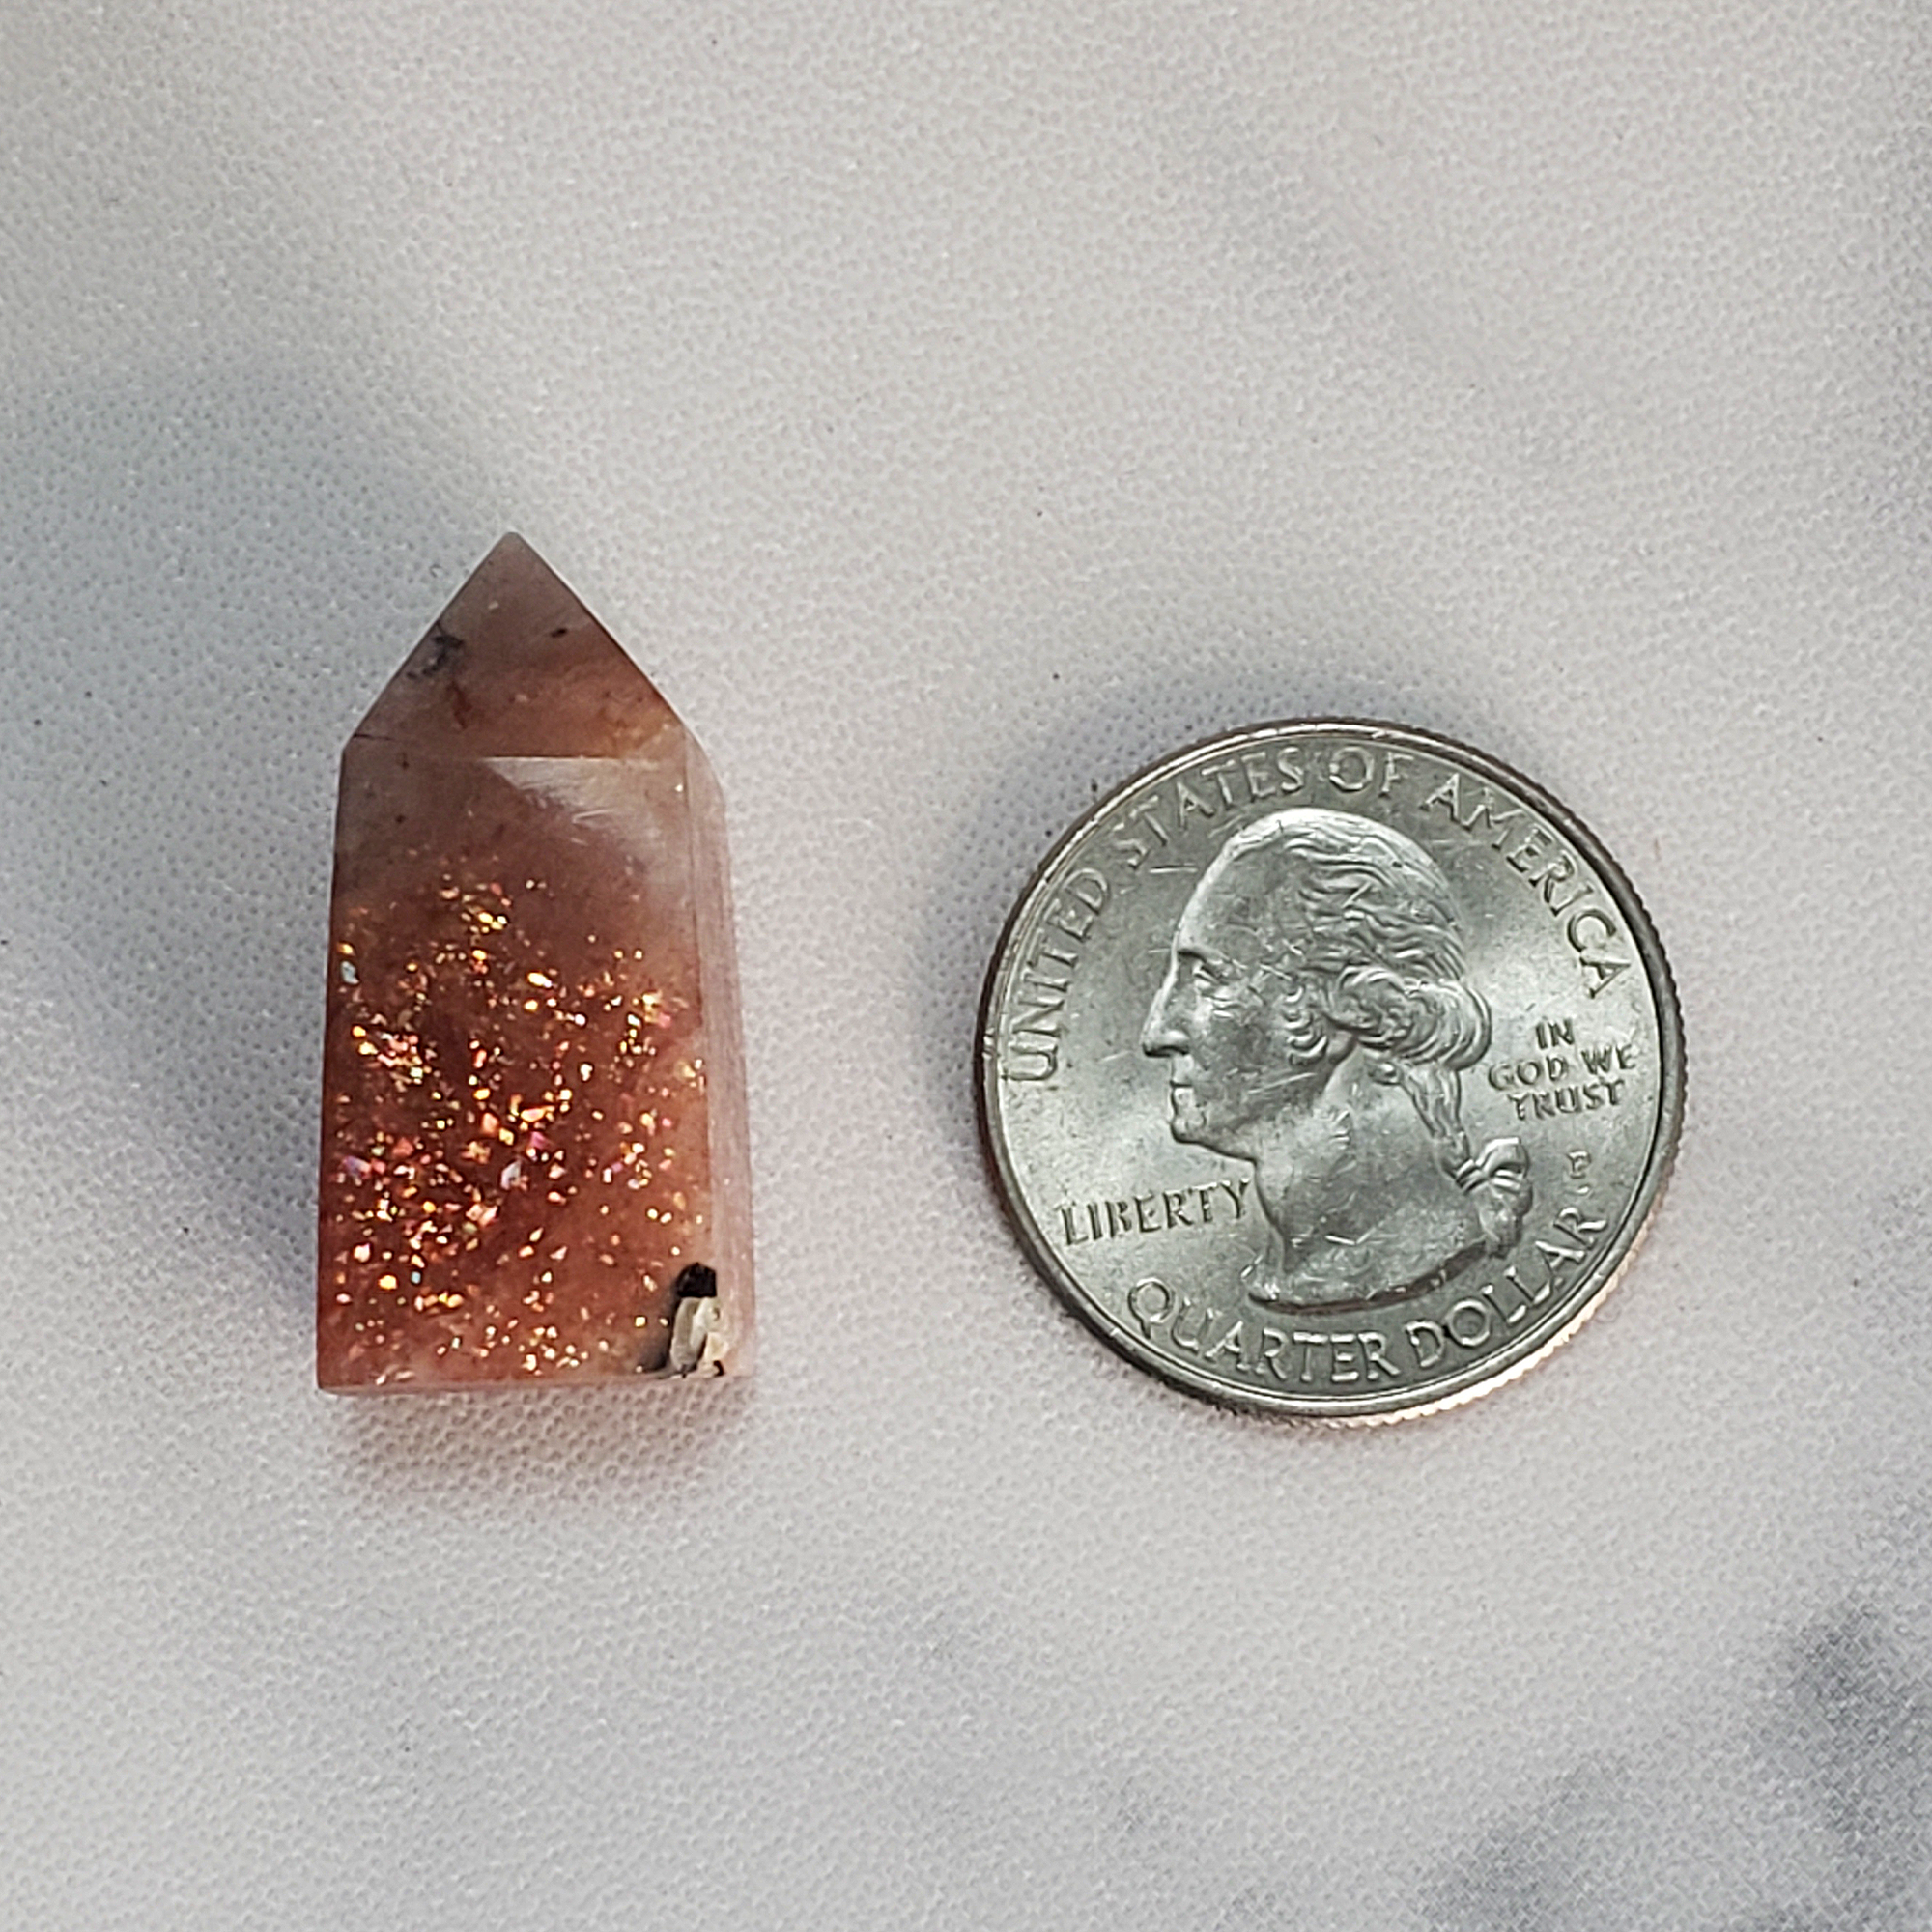 Unique MINI Confetti Sunstone Natural Crystal Tower Point - Xihe - Size Comparison